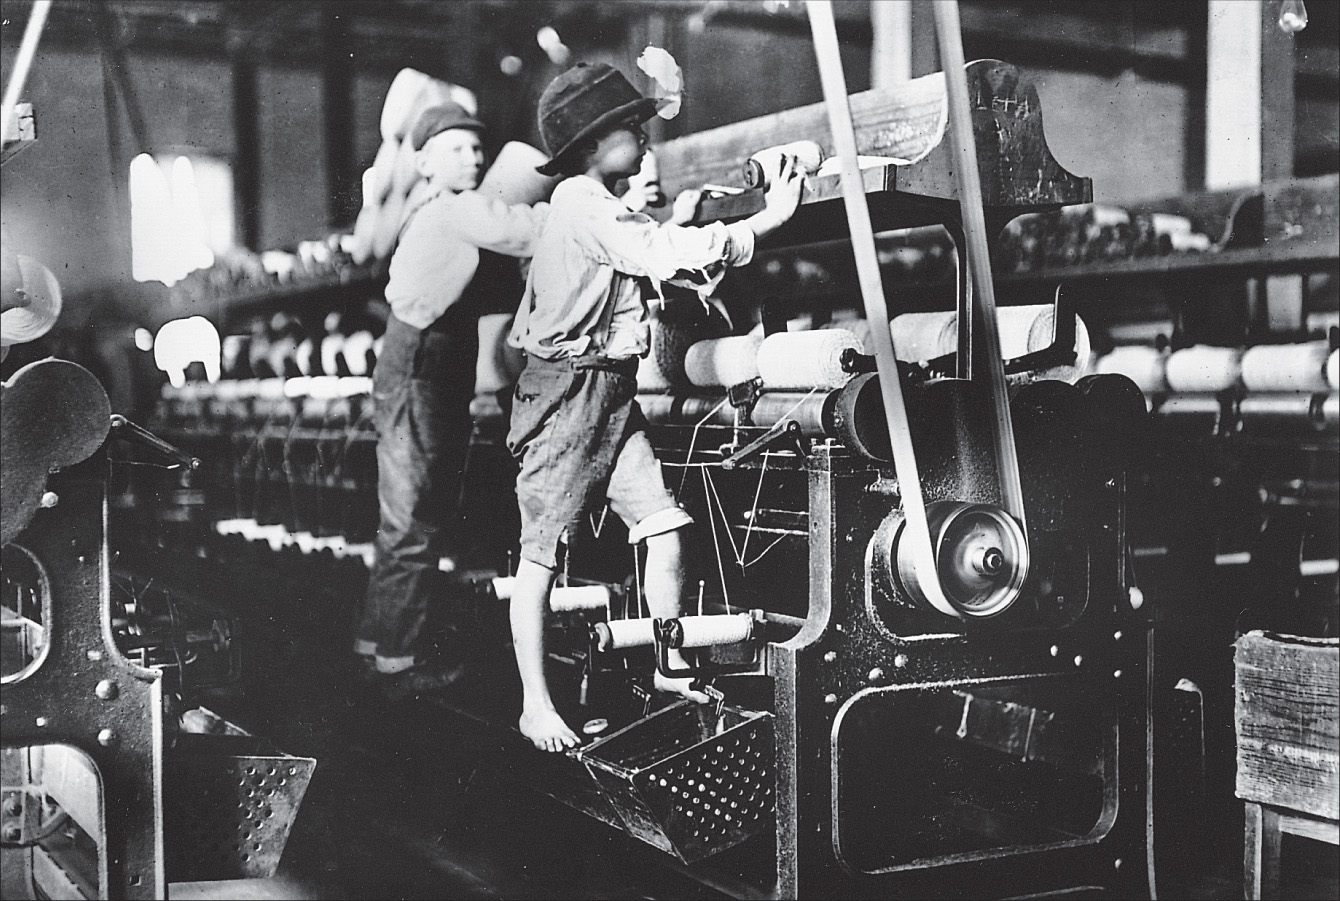 Photo: children climb on machinery